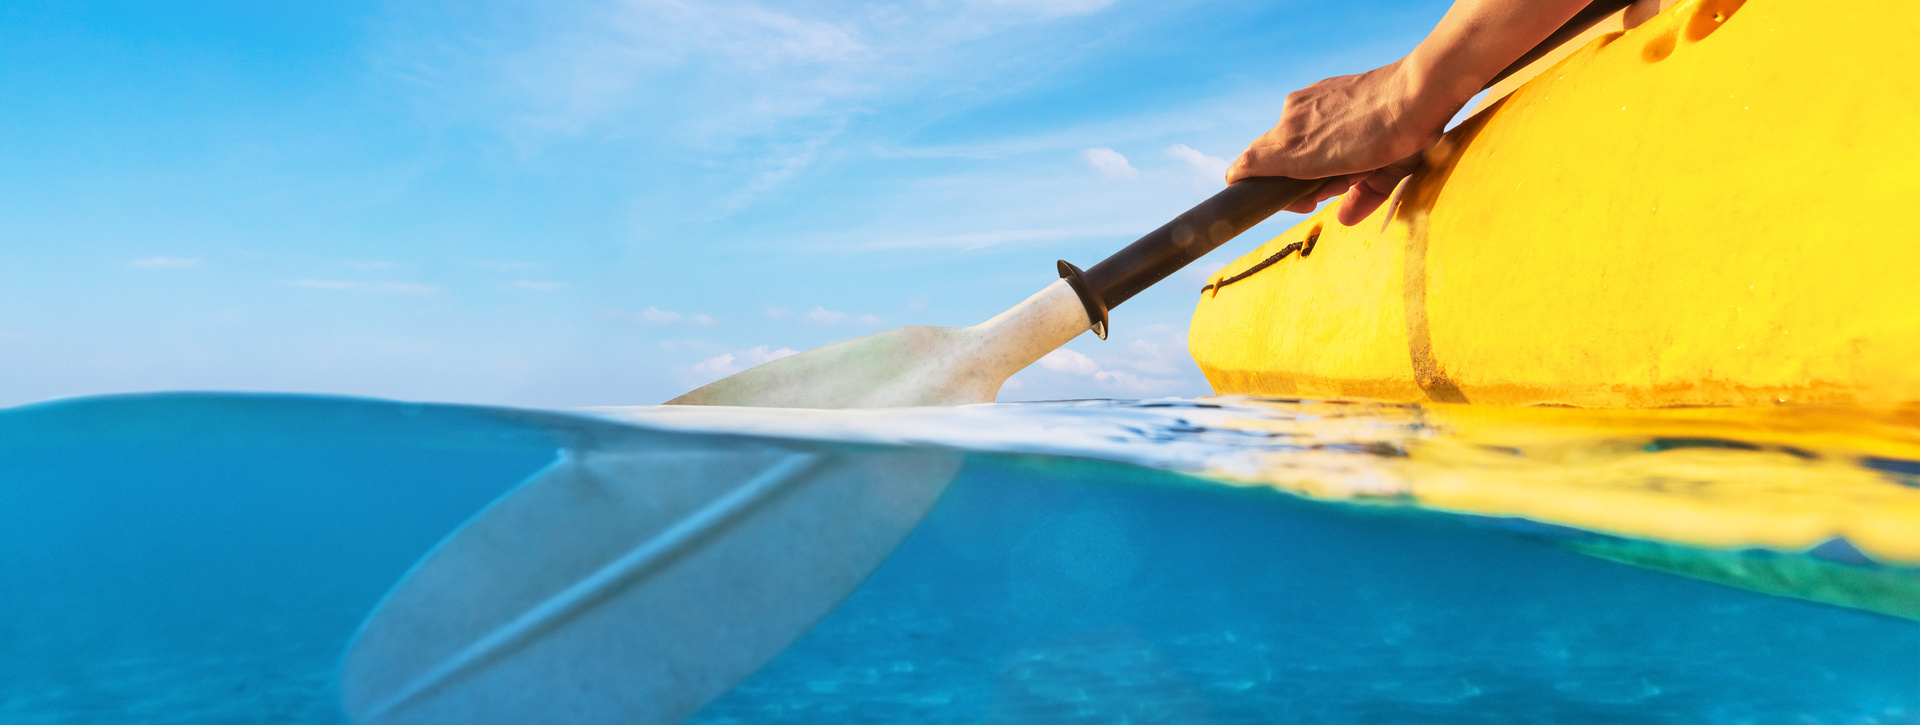 Aventura en kayak, snorkel y playa